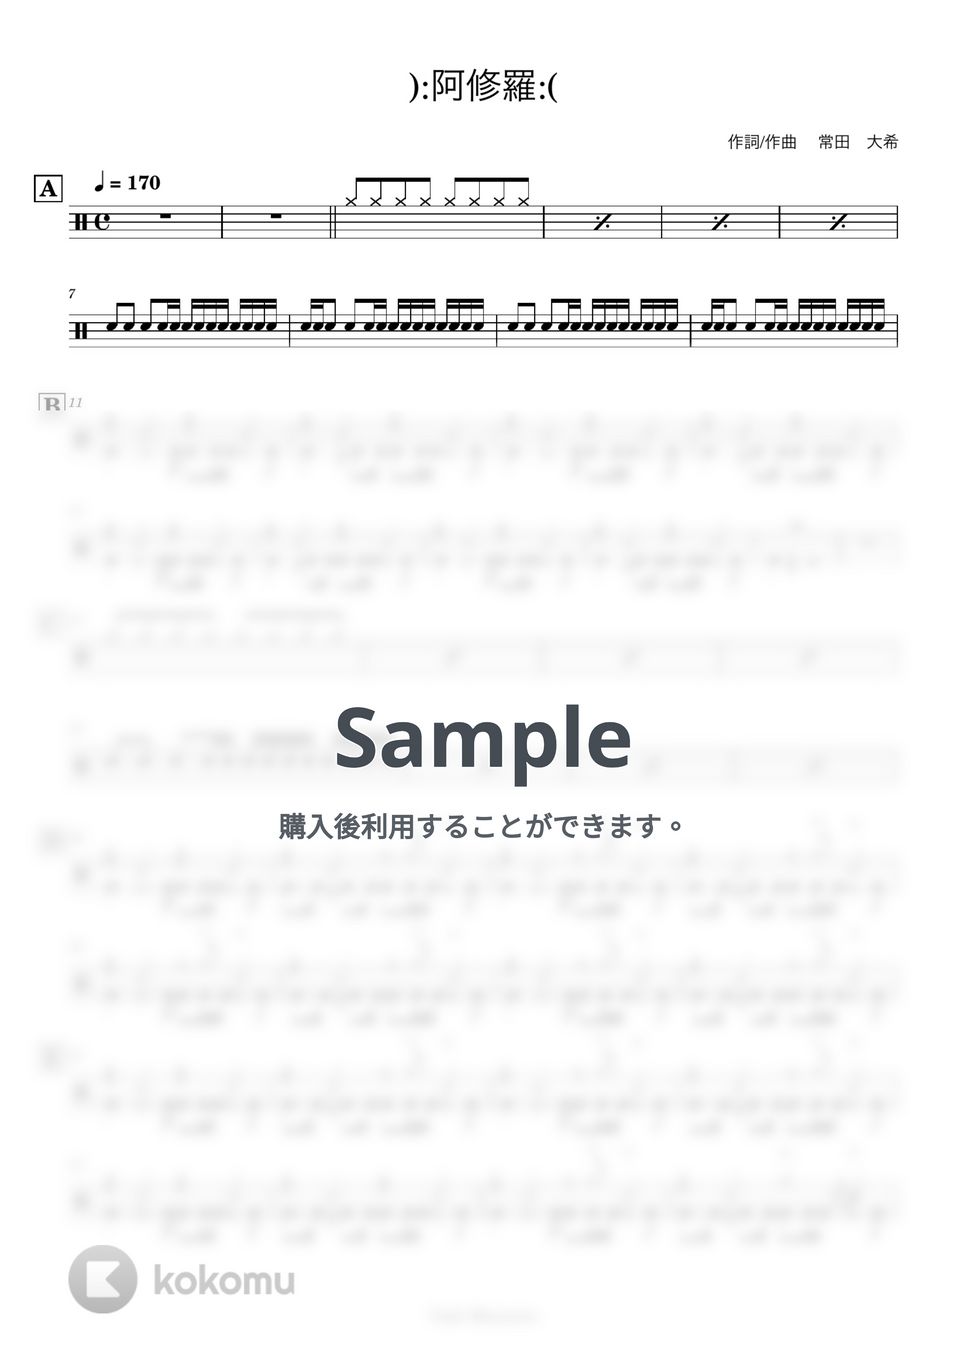 King Gnu - 【ドラム譜】):阿修羅:(【完コピ】 by Taiki Mizumoto